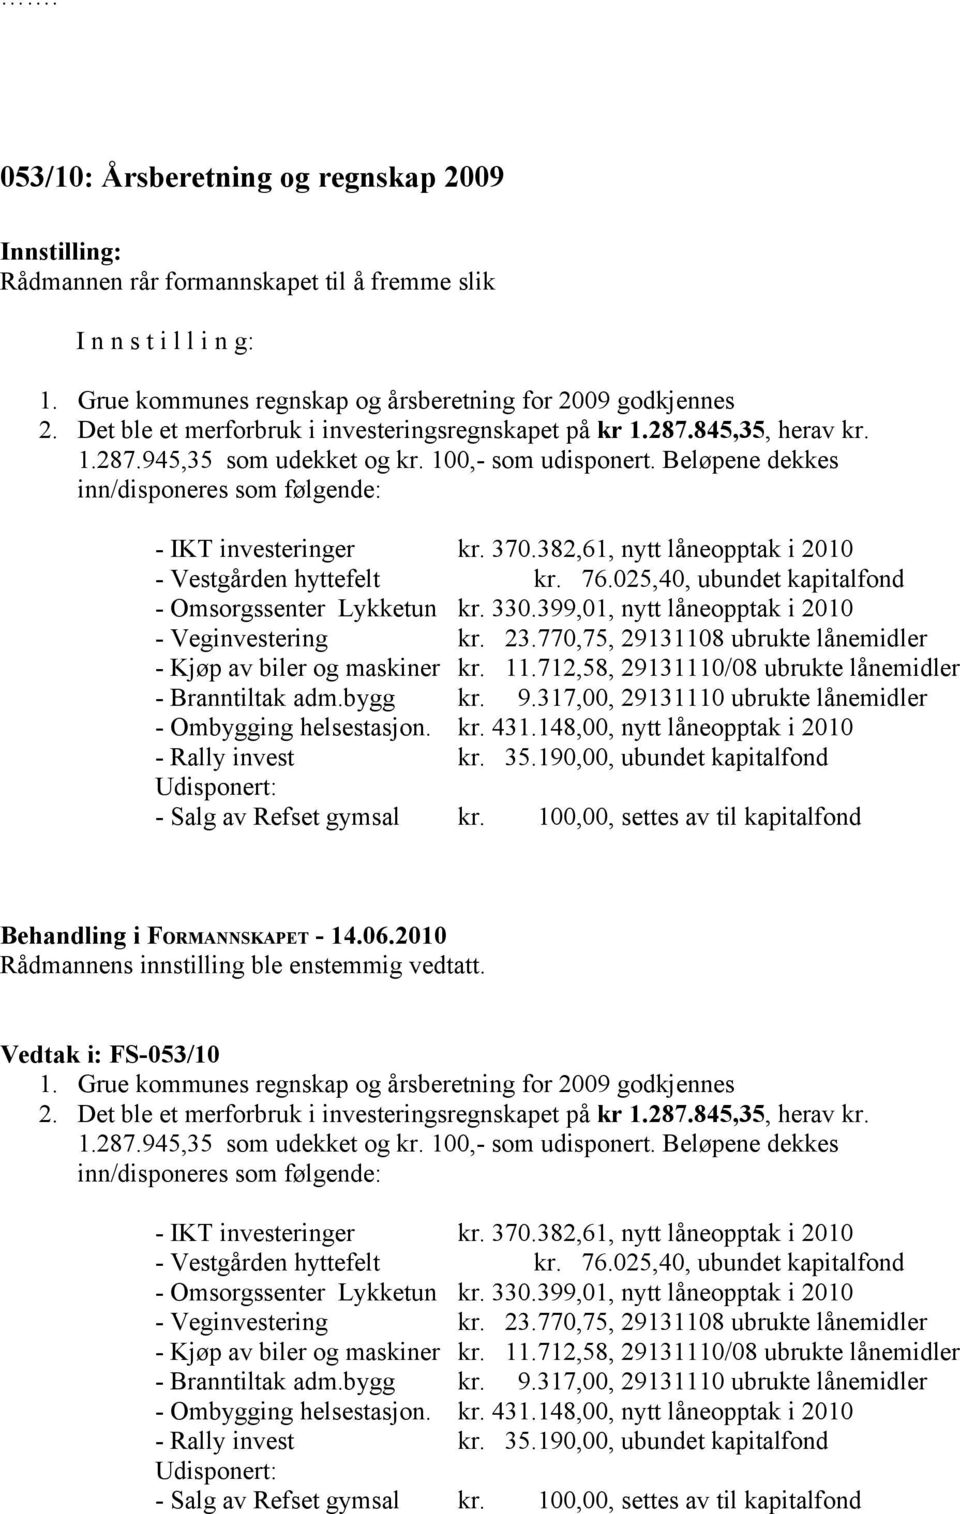 382,61, nytt låneopptak i 2010 - Vestgården hyttefelt kr. 76.025,40, ubundet kapitalfond - Omsorgssenter Lykketun kr. 330.399,01, nytt låneopptak i 2010 - Veginvestering kr. 23.